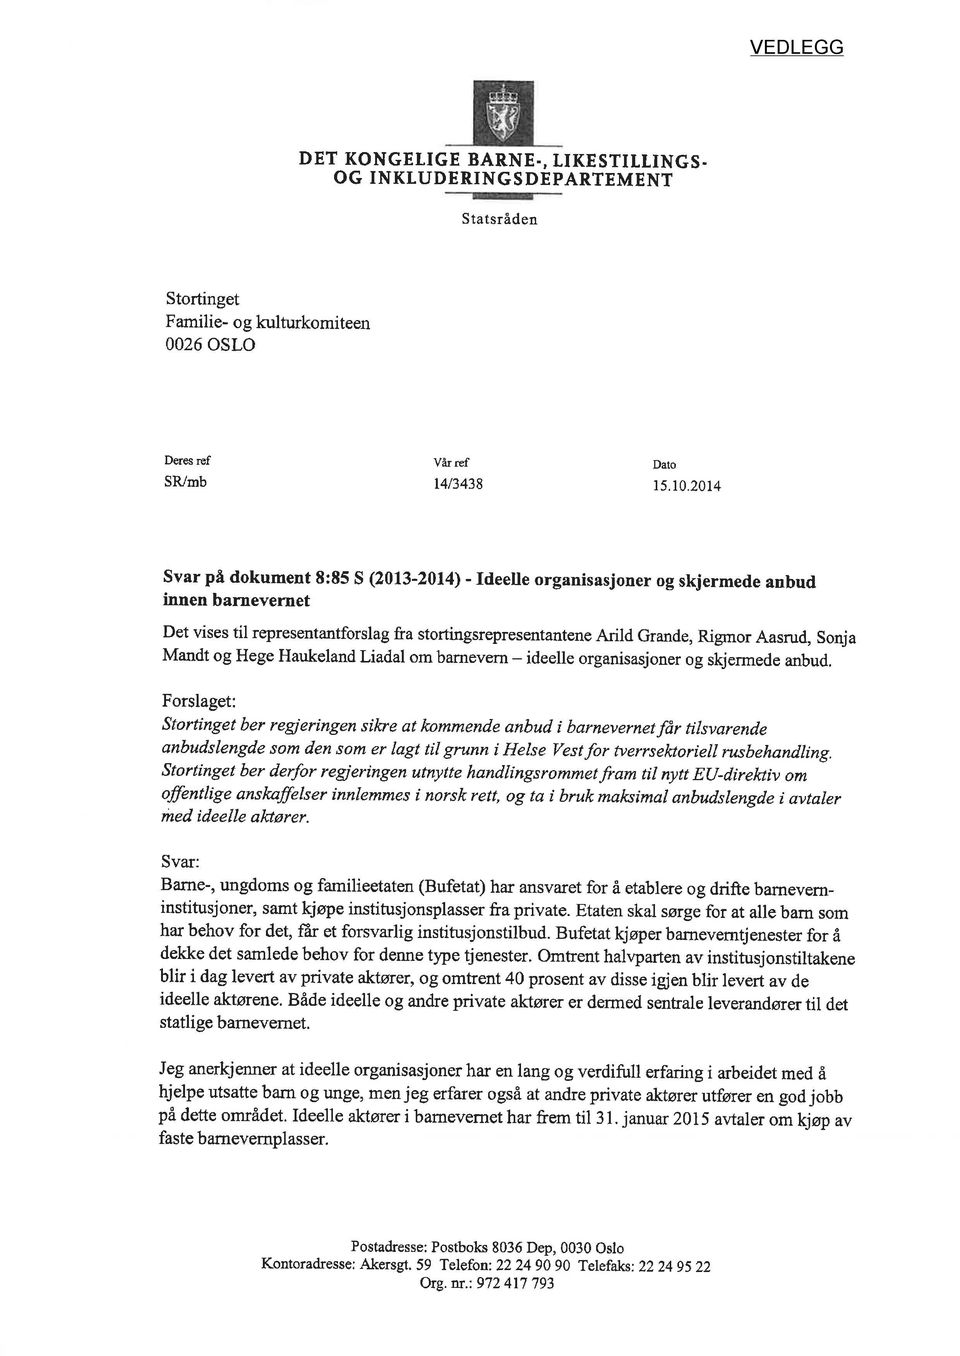 Mandt og Hege Haukeland Liadal om barnevern - ideelle organisasjoner og skjermede anbud.